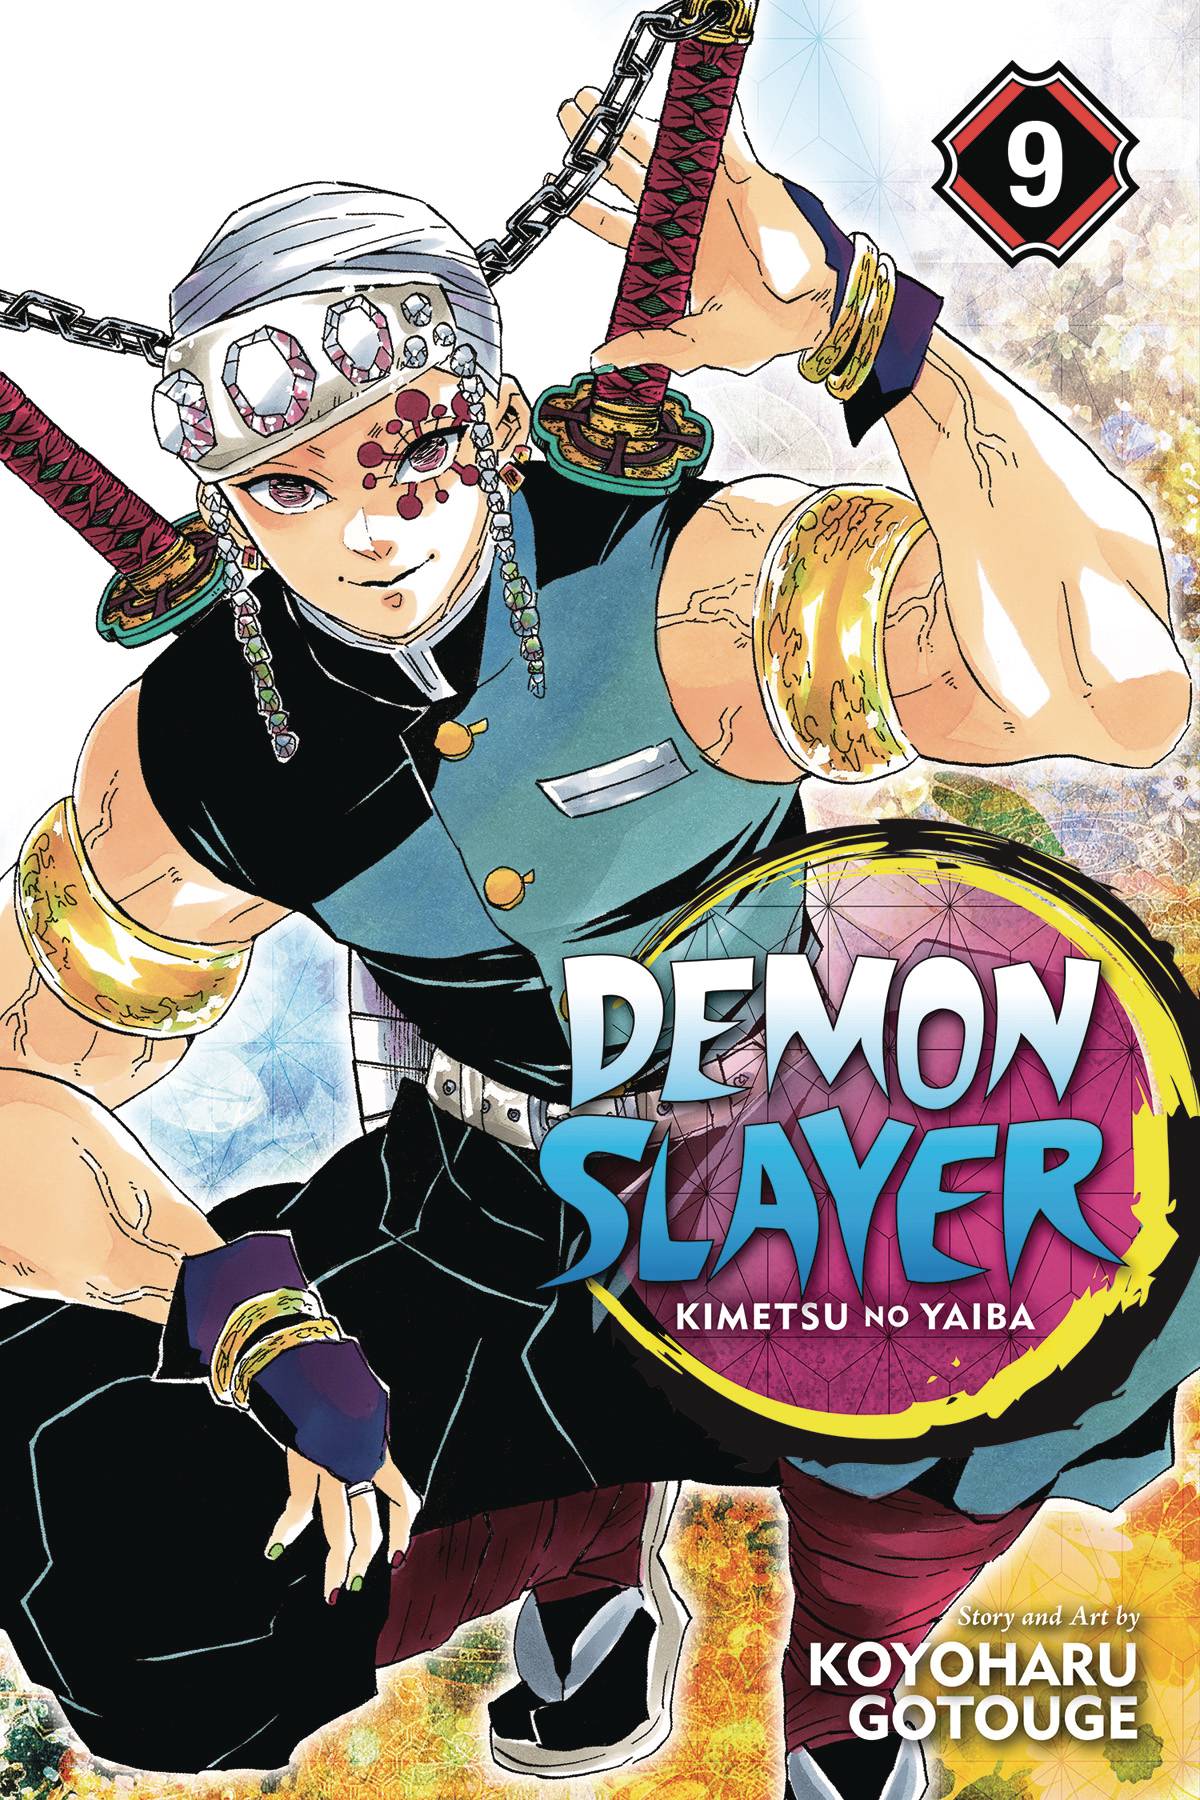 Demon Slayer Kimetsu No Yaiba Manga Volume 9